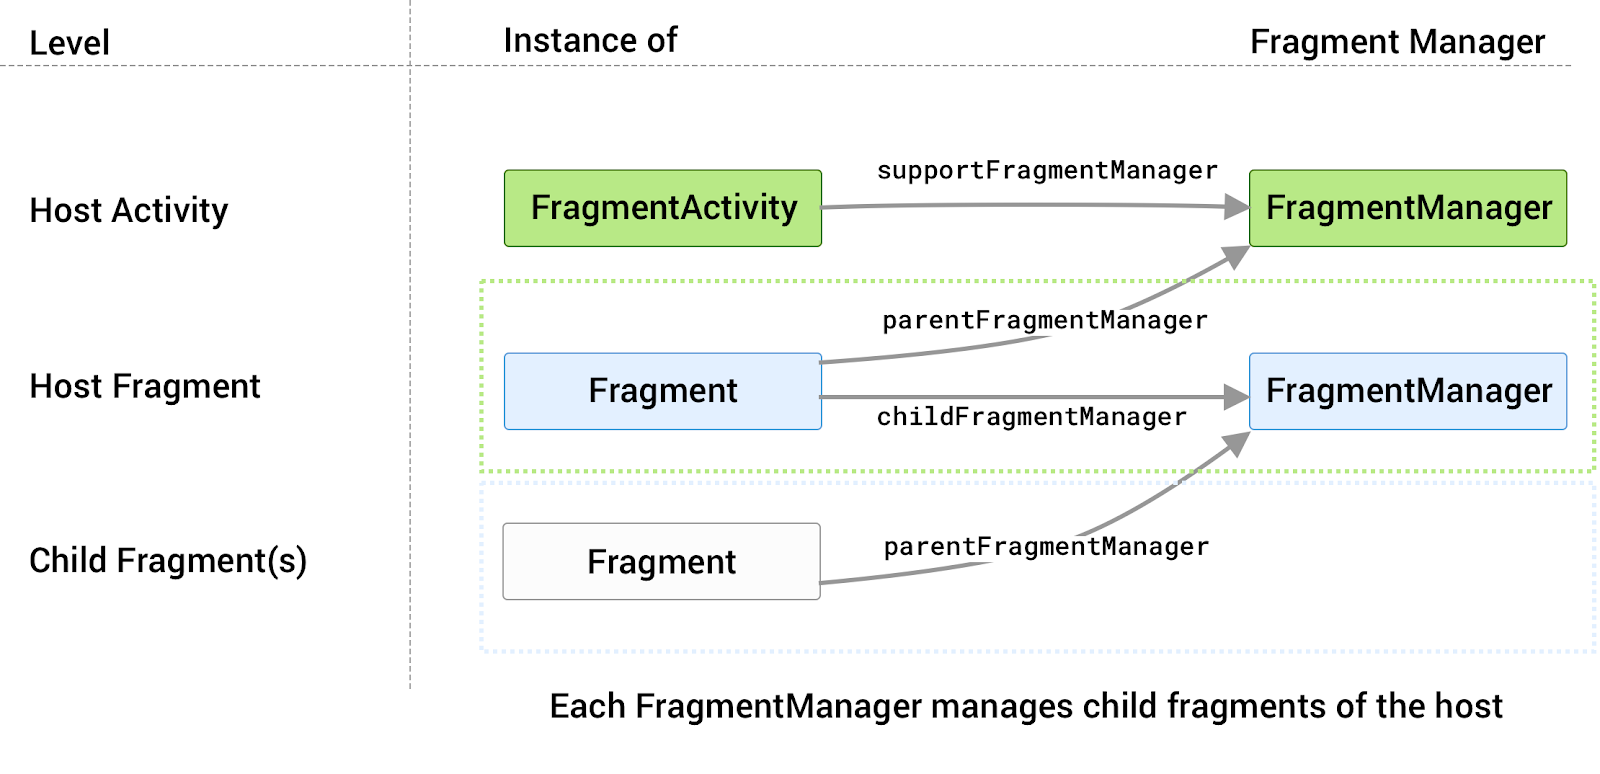 cada host tiene su propio FragmentManager asociado que administra sus fragmentos secundarios